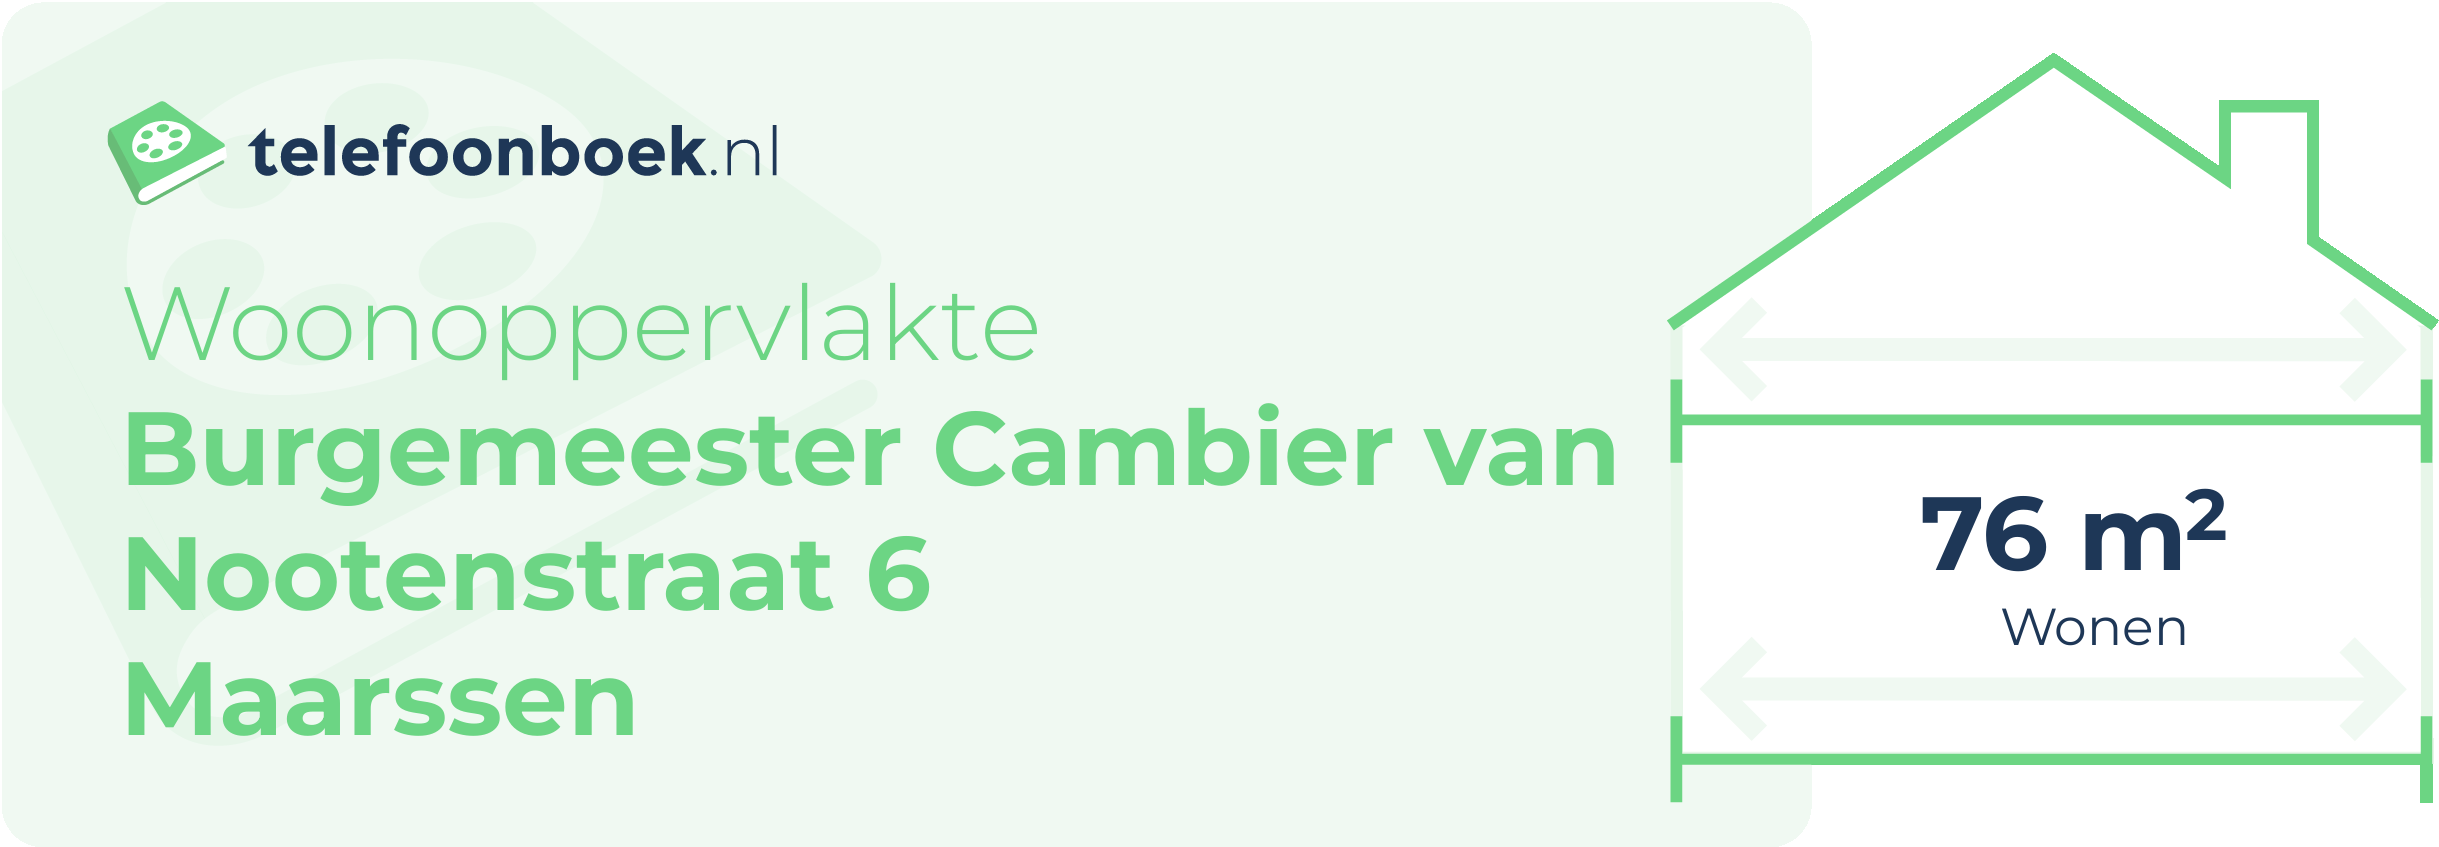 Woonoppervlakte Burgemeester Cambier Van Nootenstraat 6 Maarssen